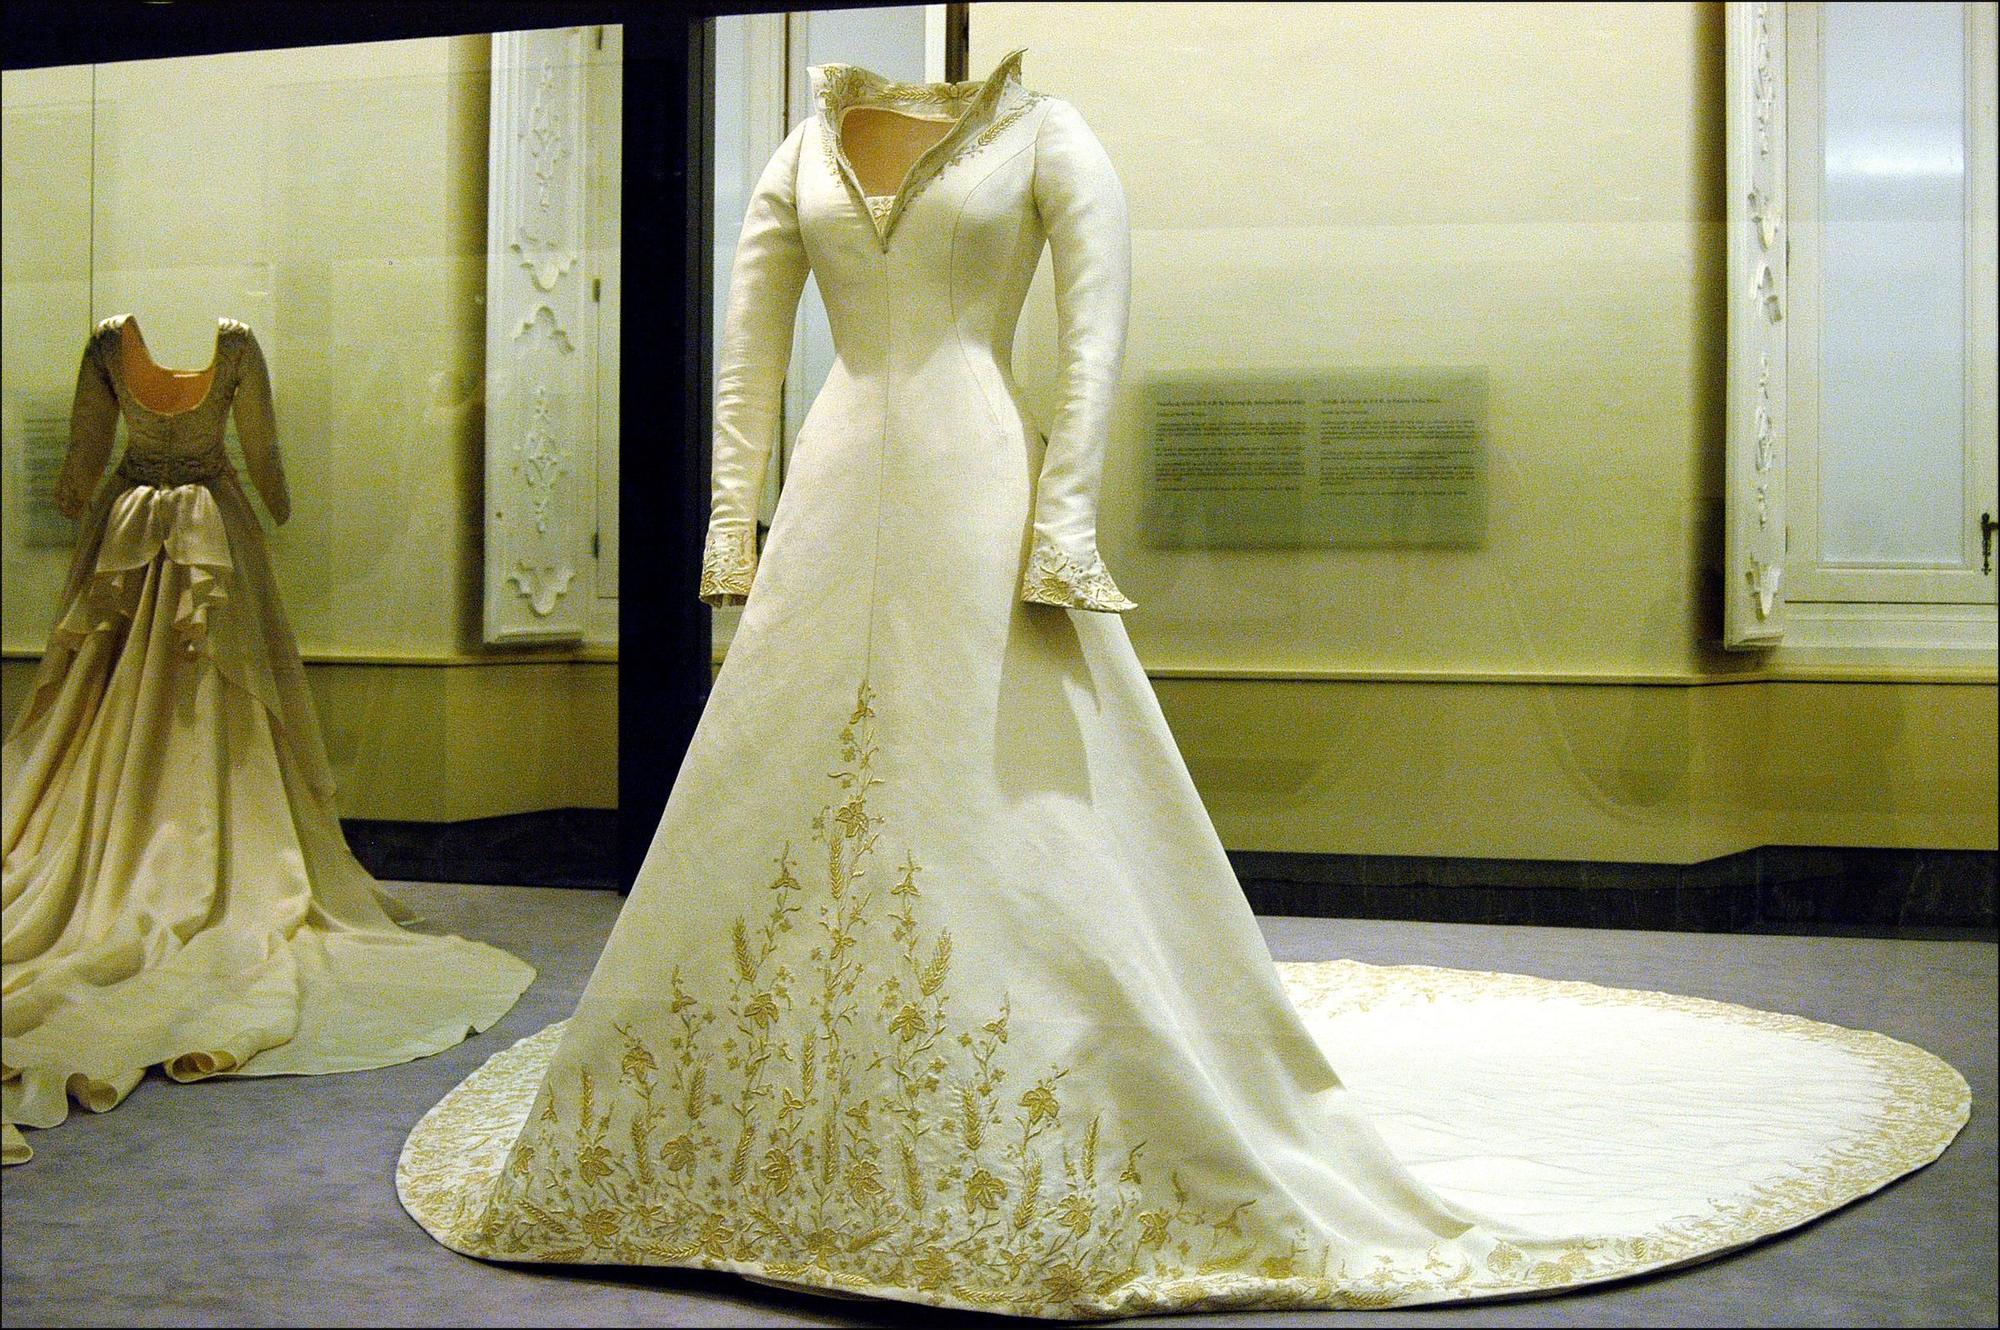 Exposición del vestido de novia de la reina Letizia